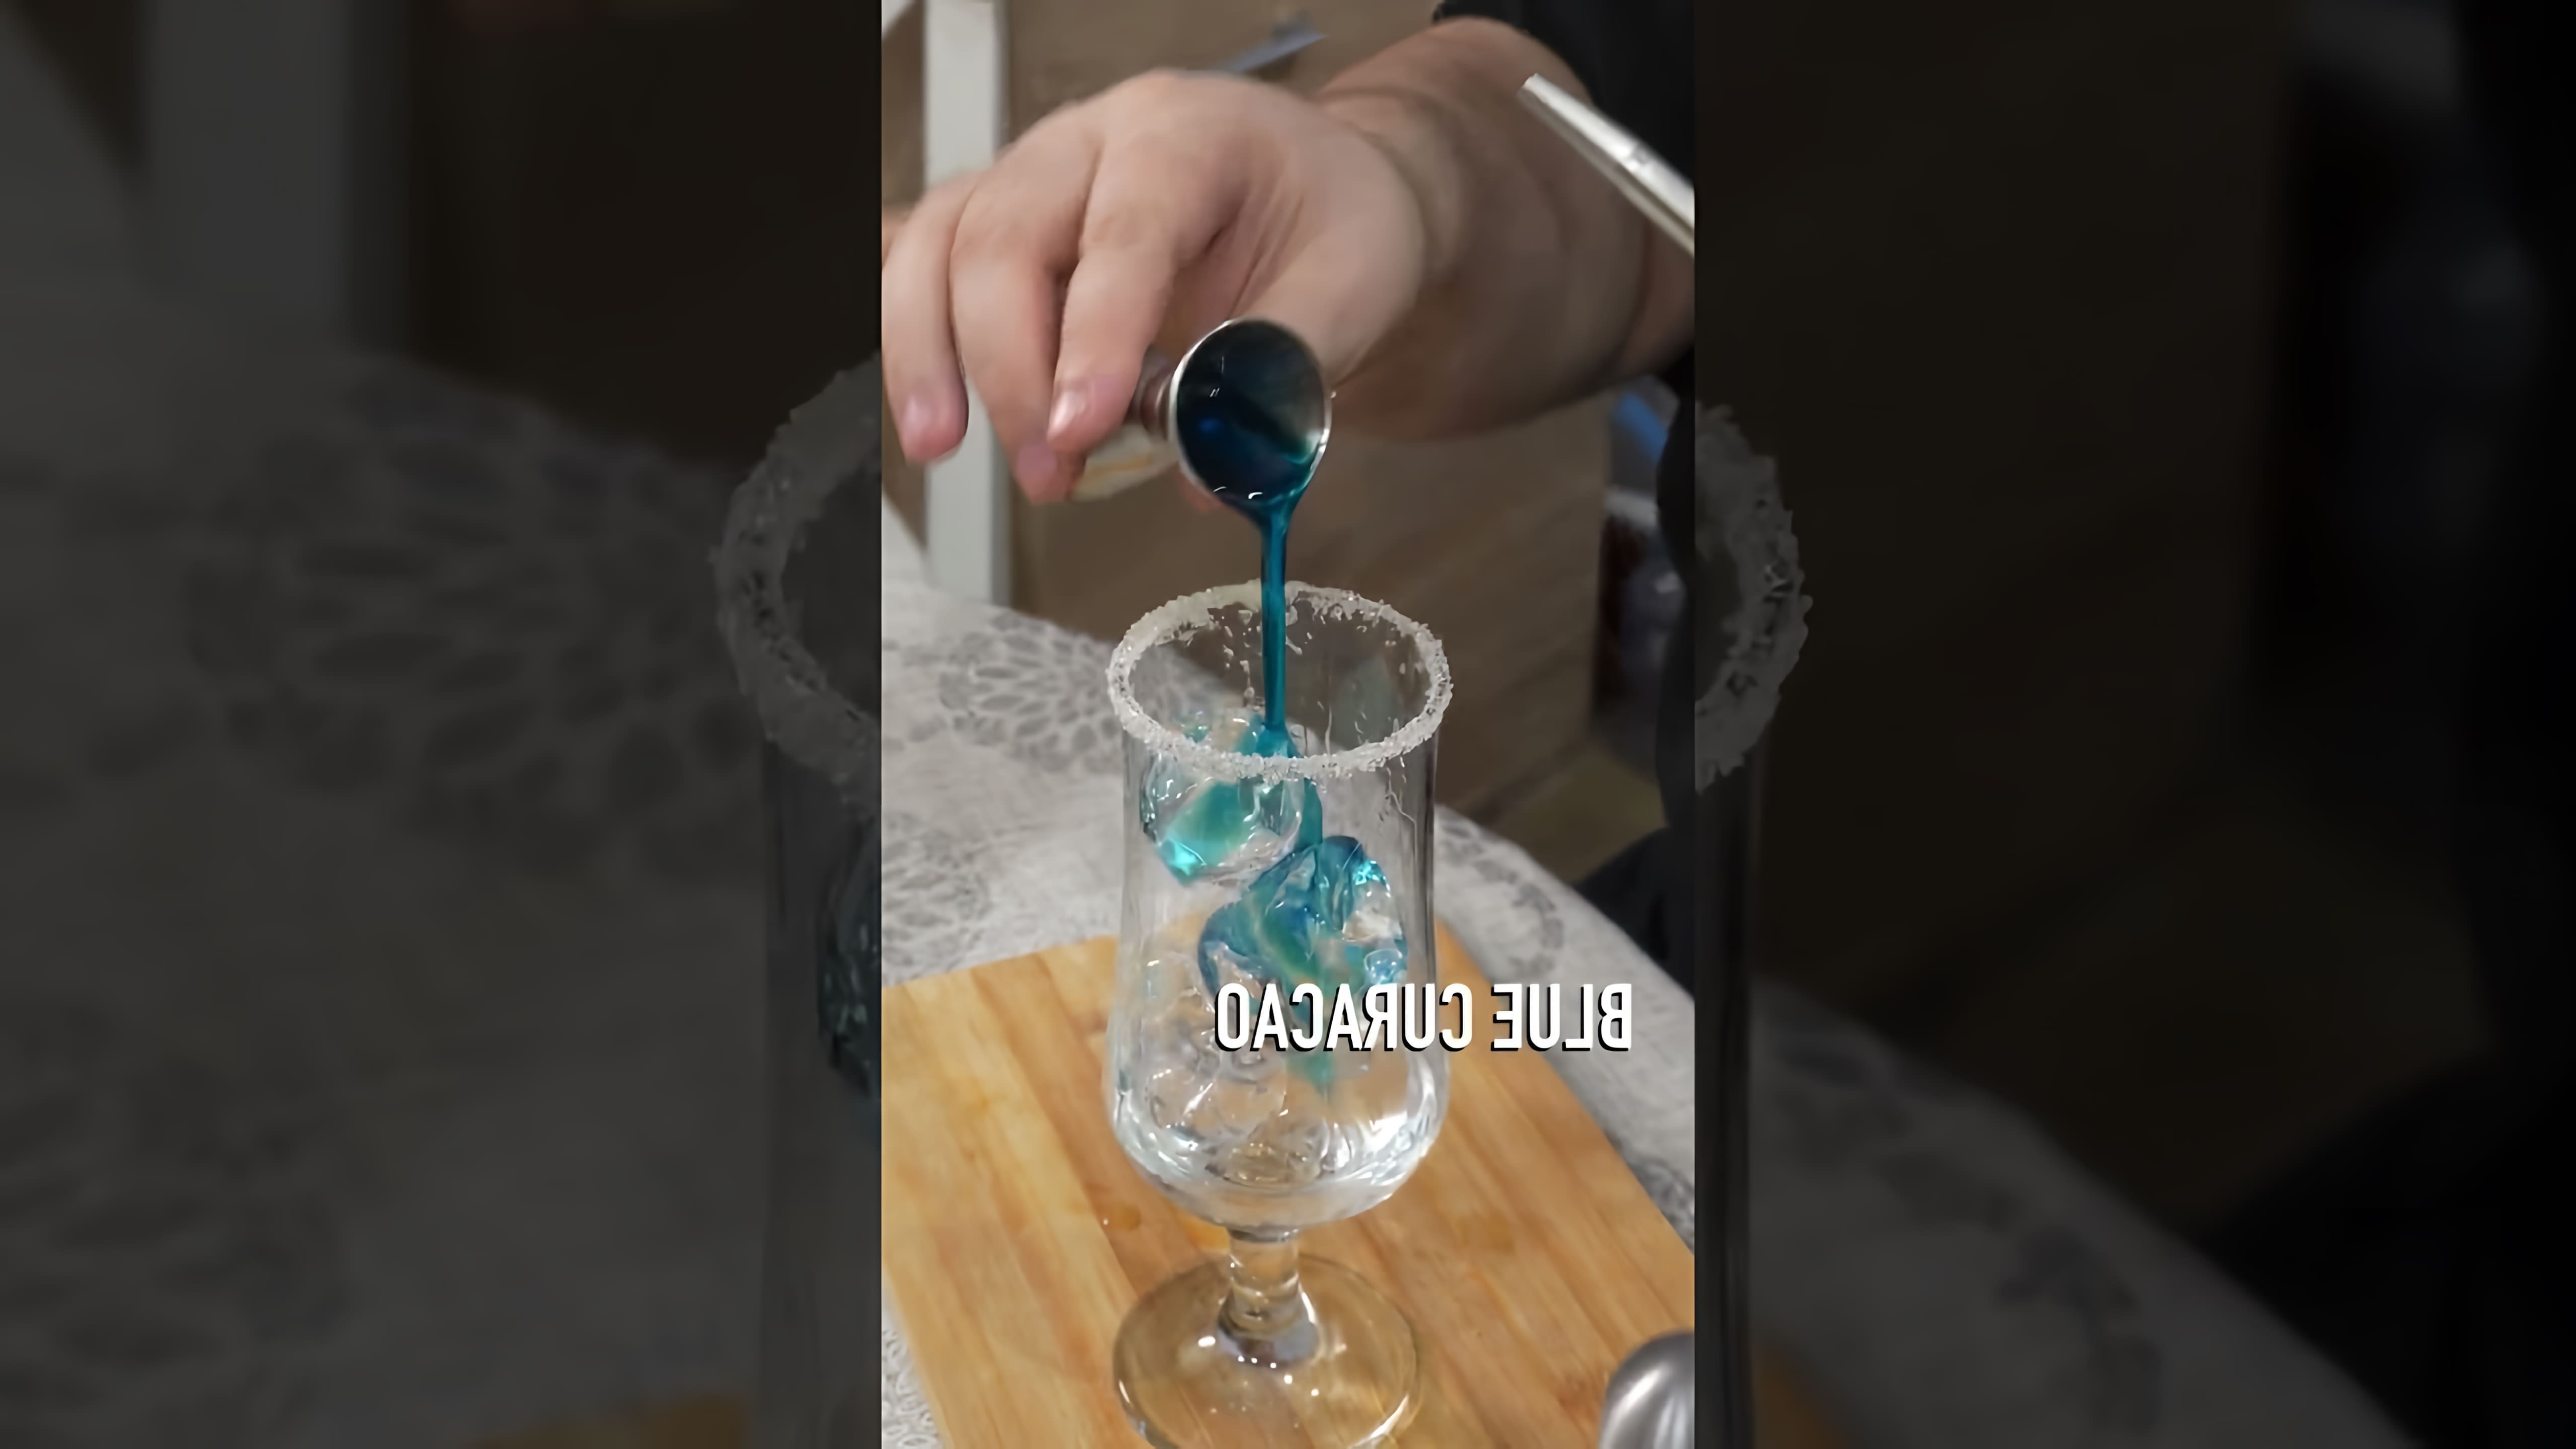 "Коктейль Голубая лагуна" - это популярный напиток, который можно приготовить в домашних условиях